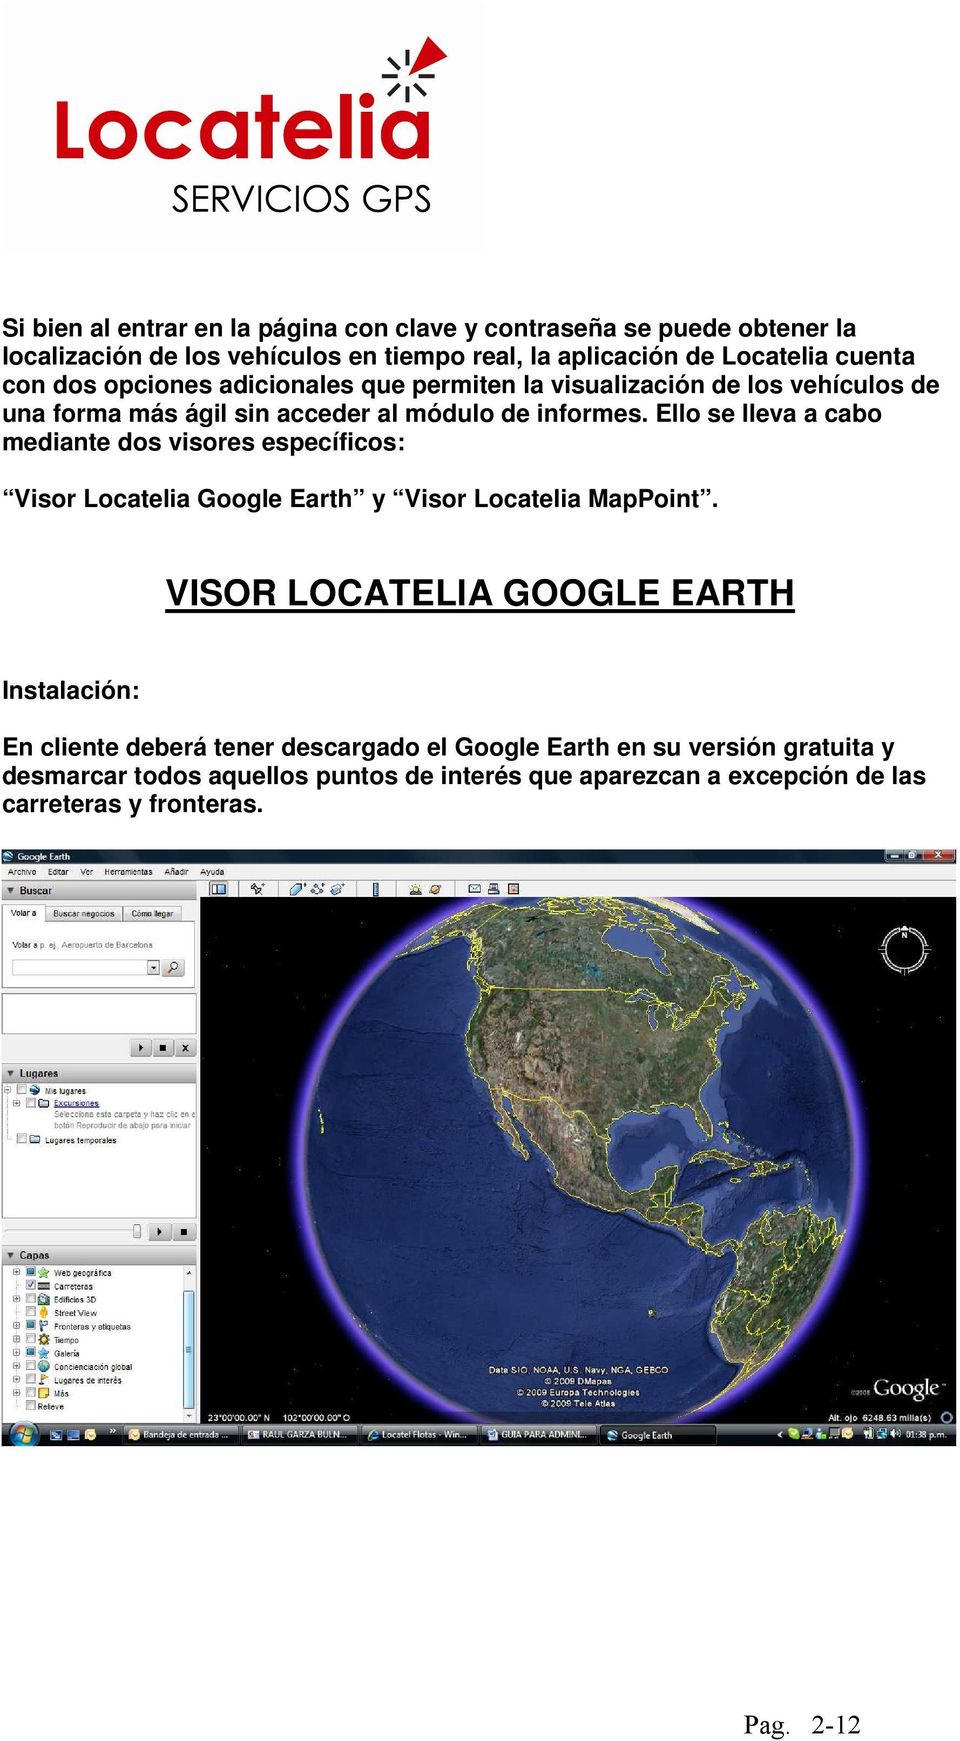 Ello se lleva a cabo mediante dos visores específicos: Visor Locatelia Google Earth y Visor Locatelia MapPoint.